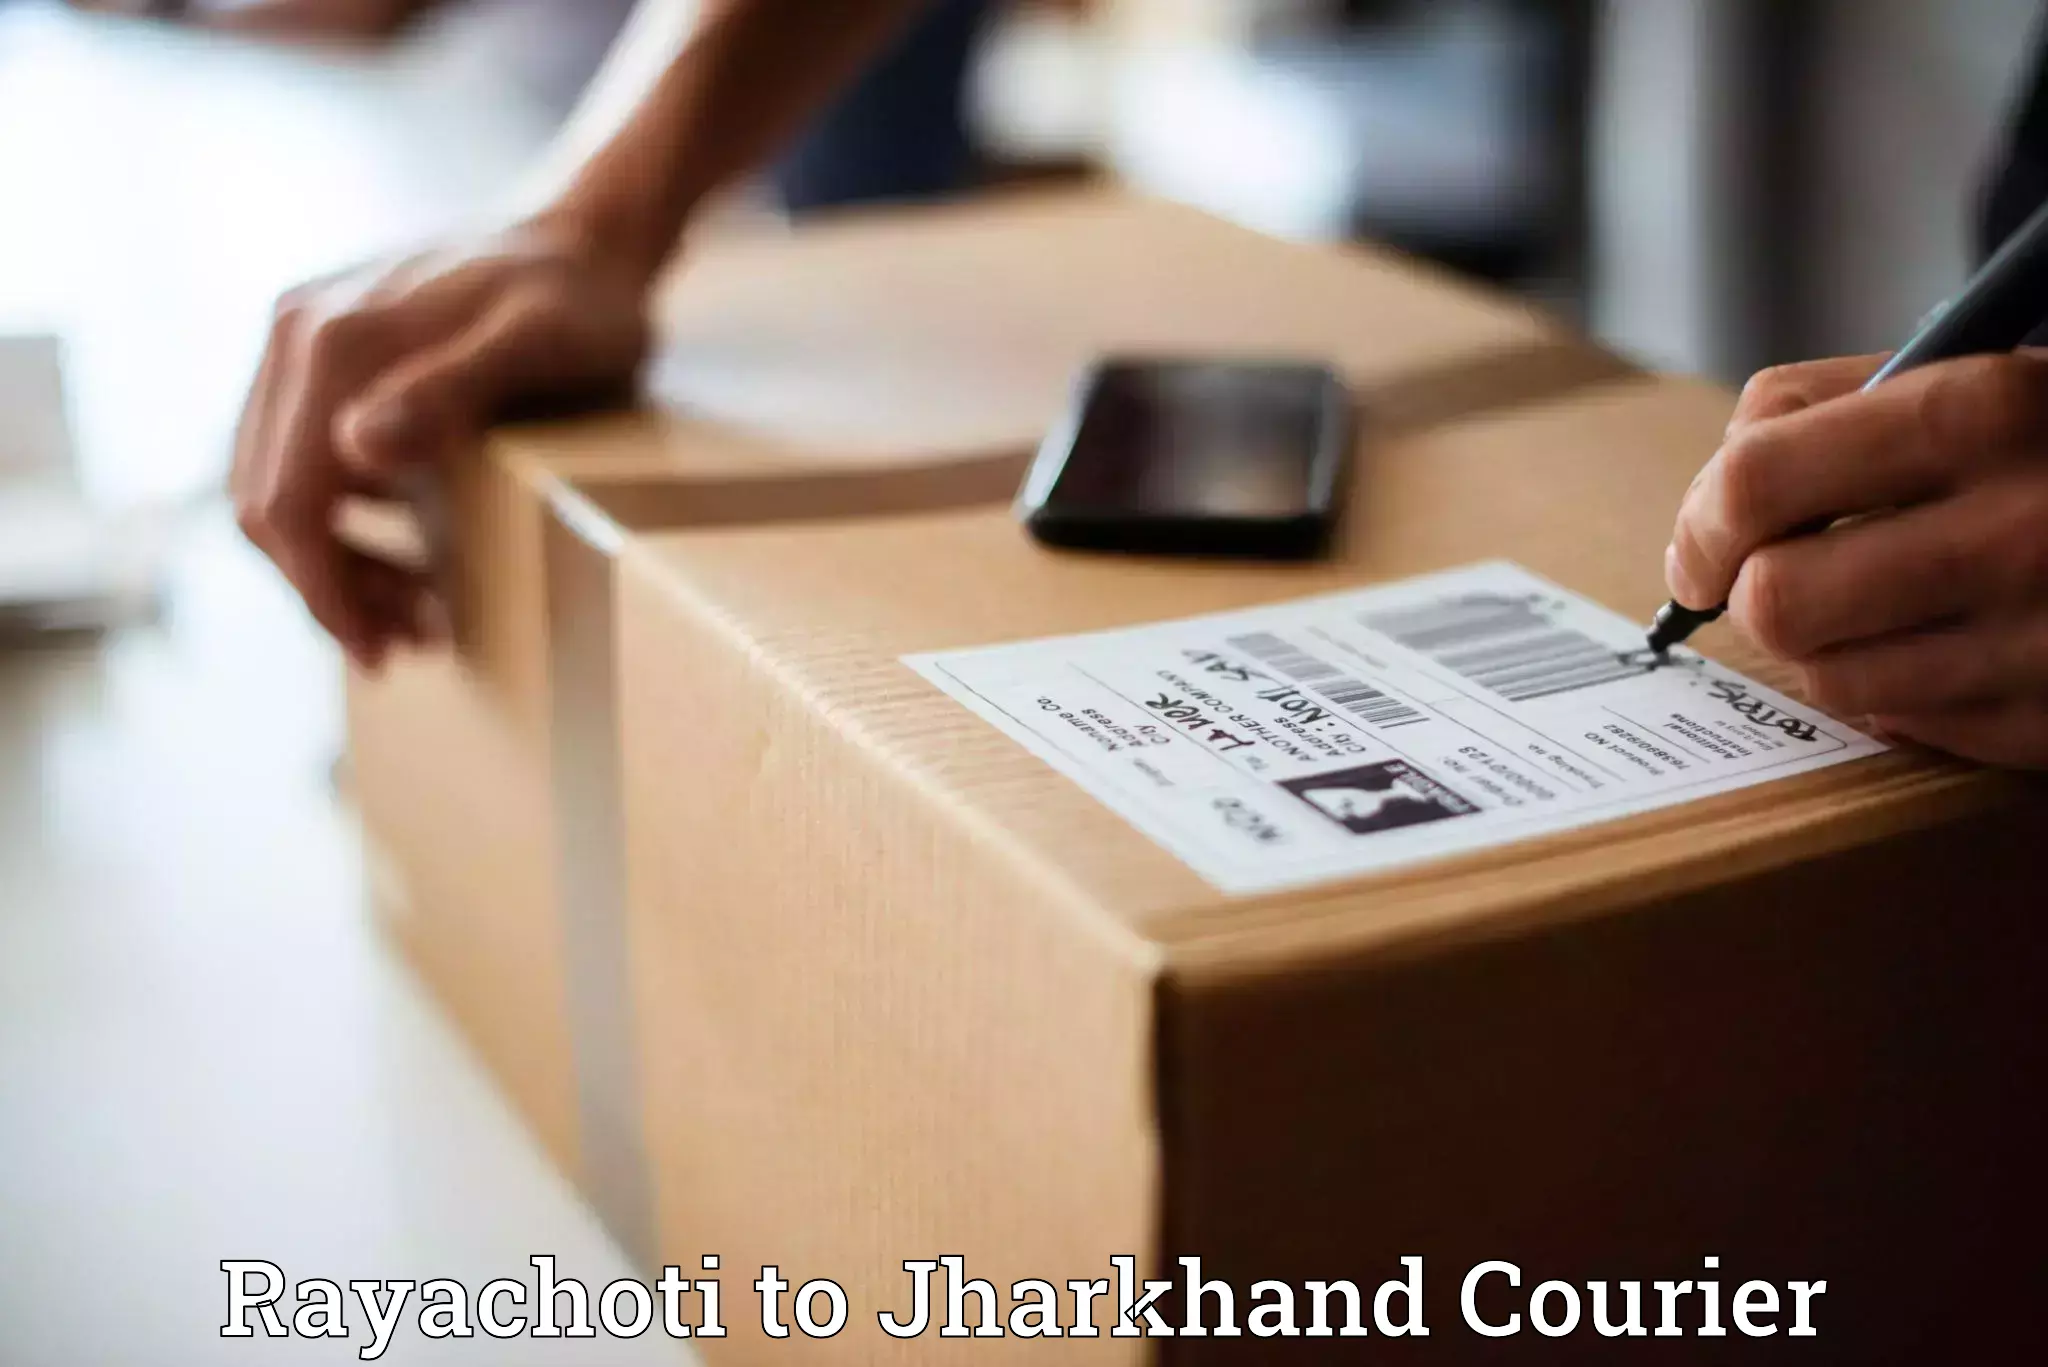 Urgent courier needs Rayachoti to Hazaribagh